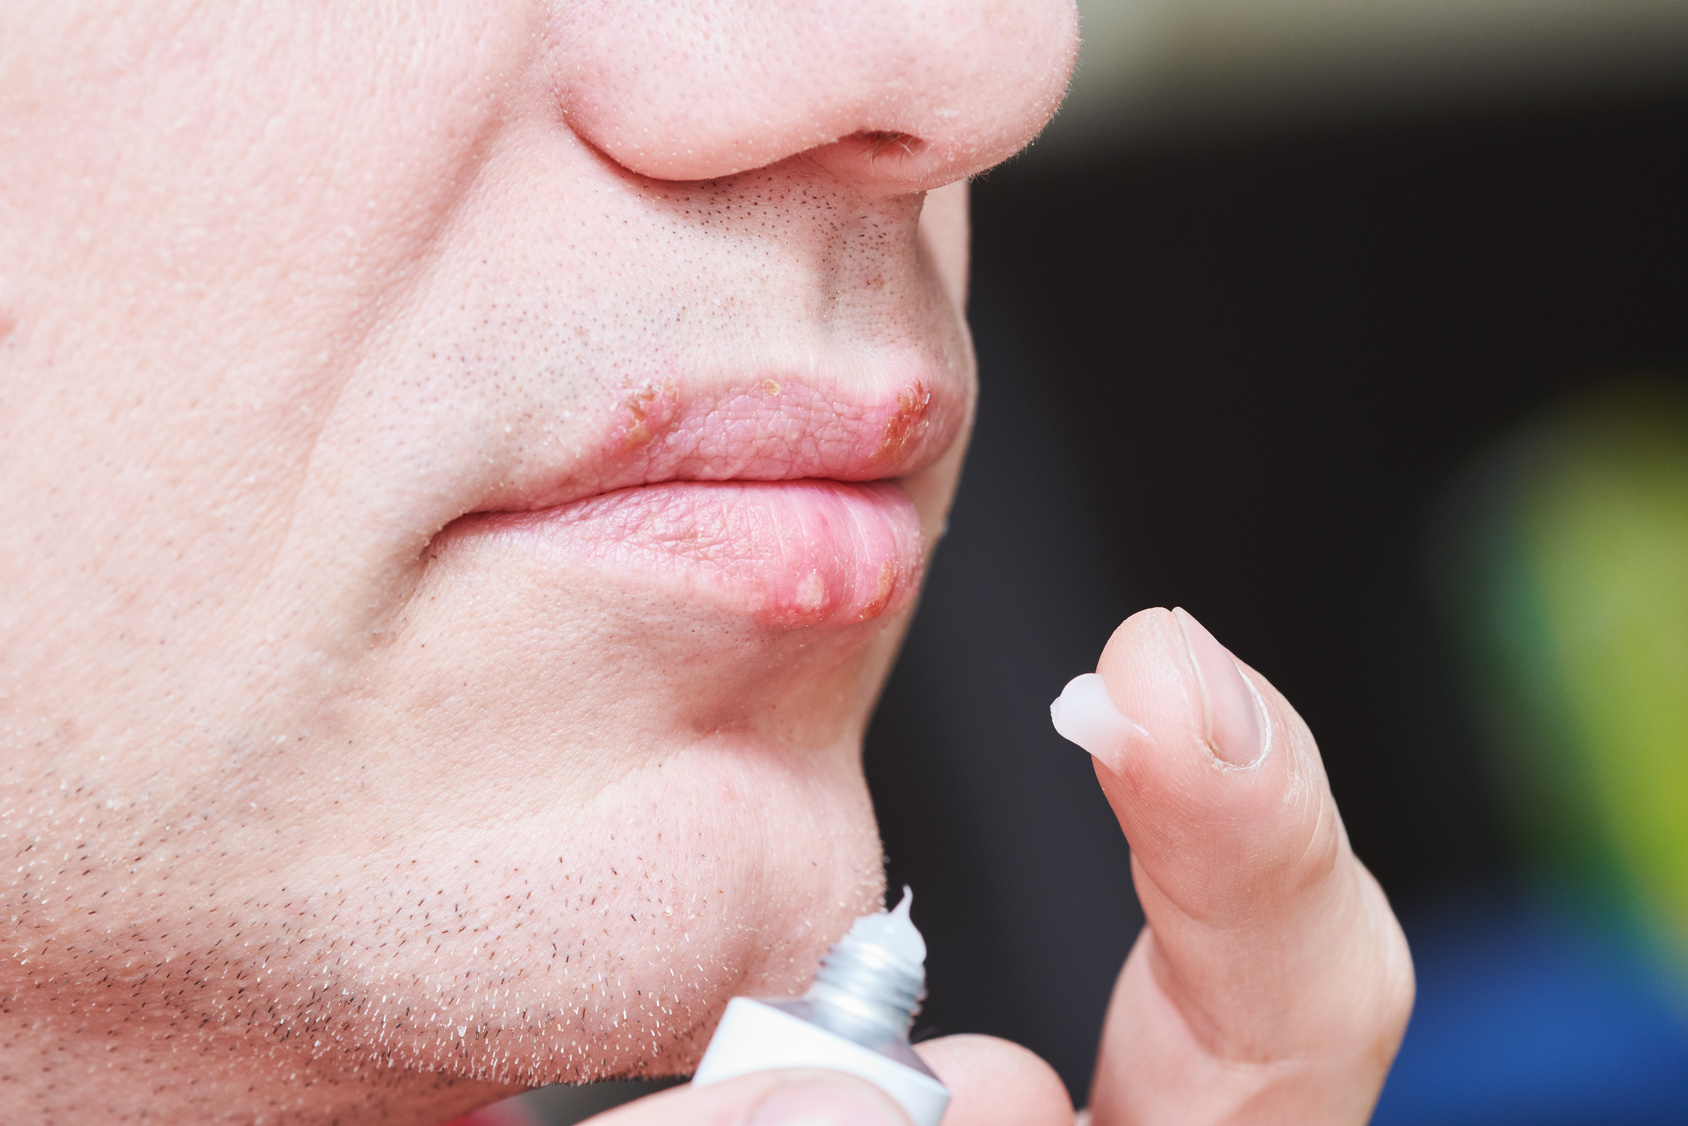 Ziołowa ulga dla ust, czyli bezpieczne leczenie opryszczki wargowej